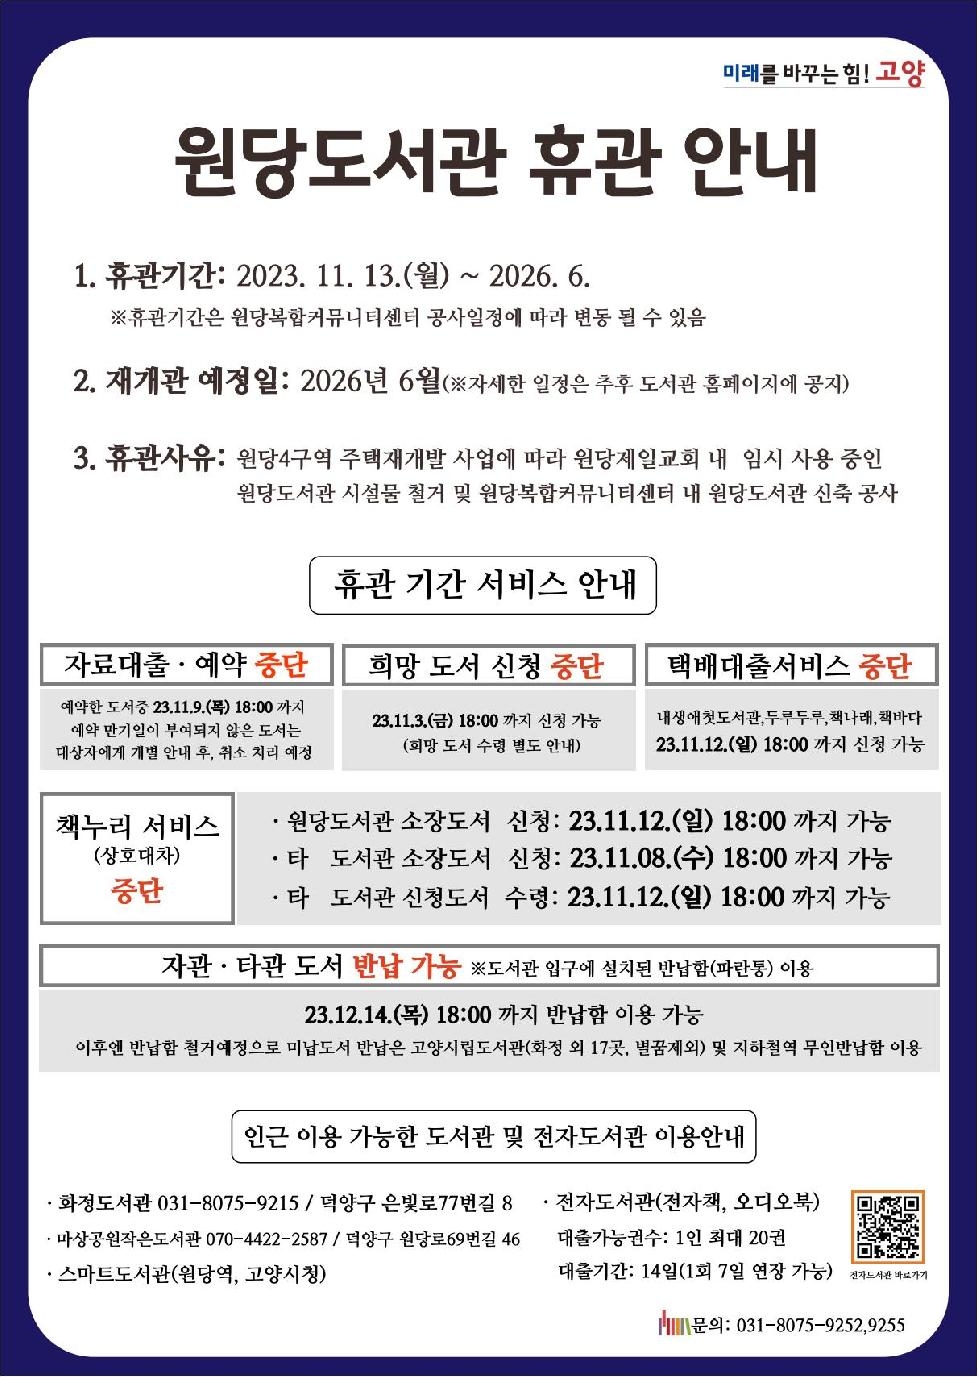 고양 원당도서관 11월 13일부터 휴관